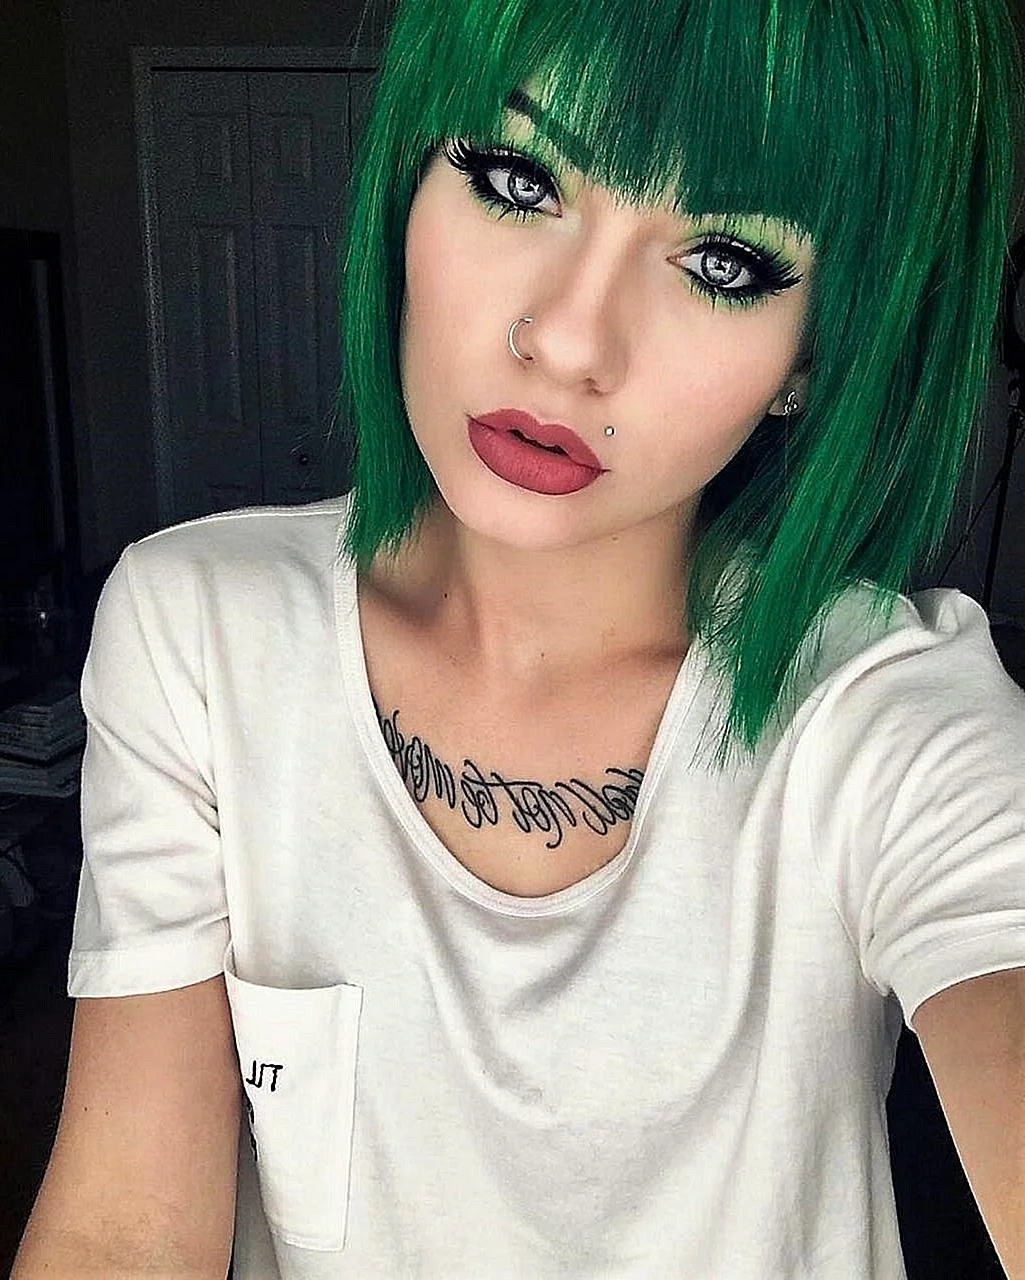 Зеленые волосы